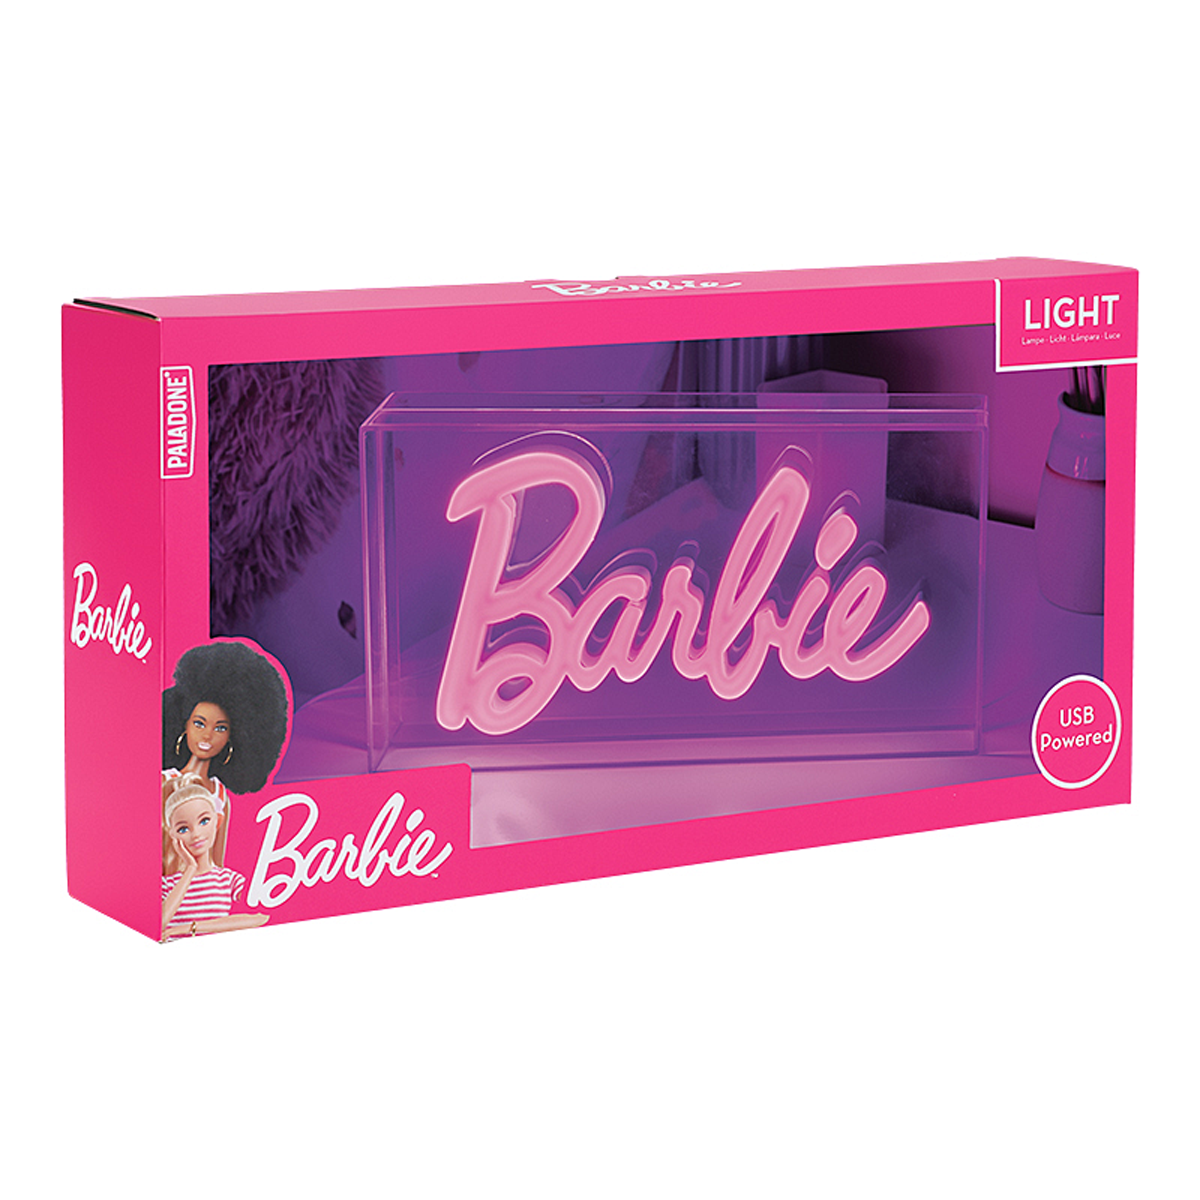 Barbie - Barbie LED Neonlampe - Lampe - multicolor